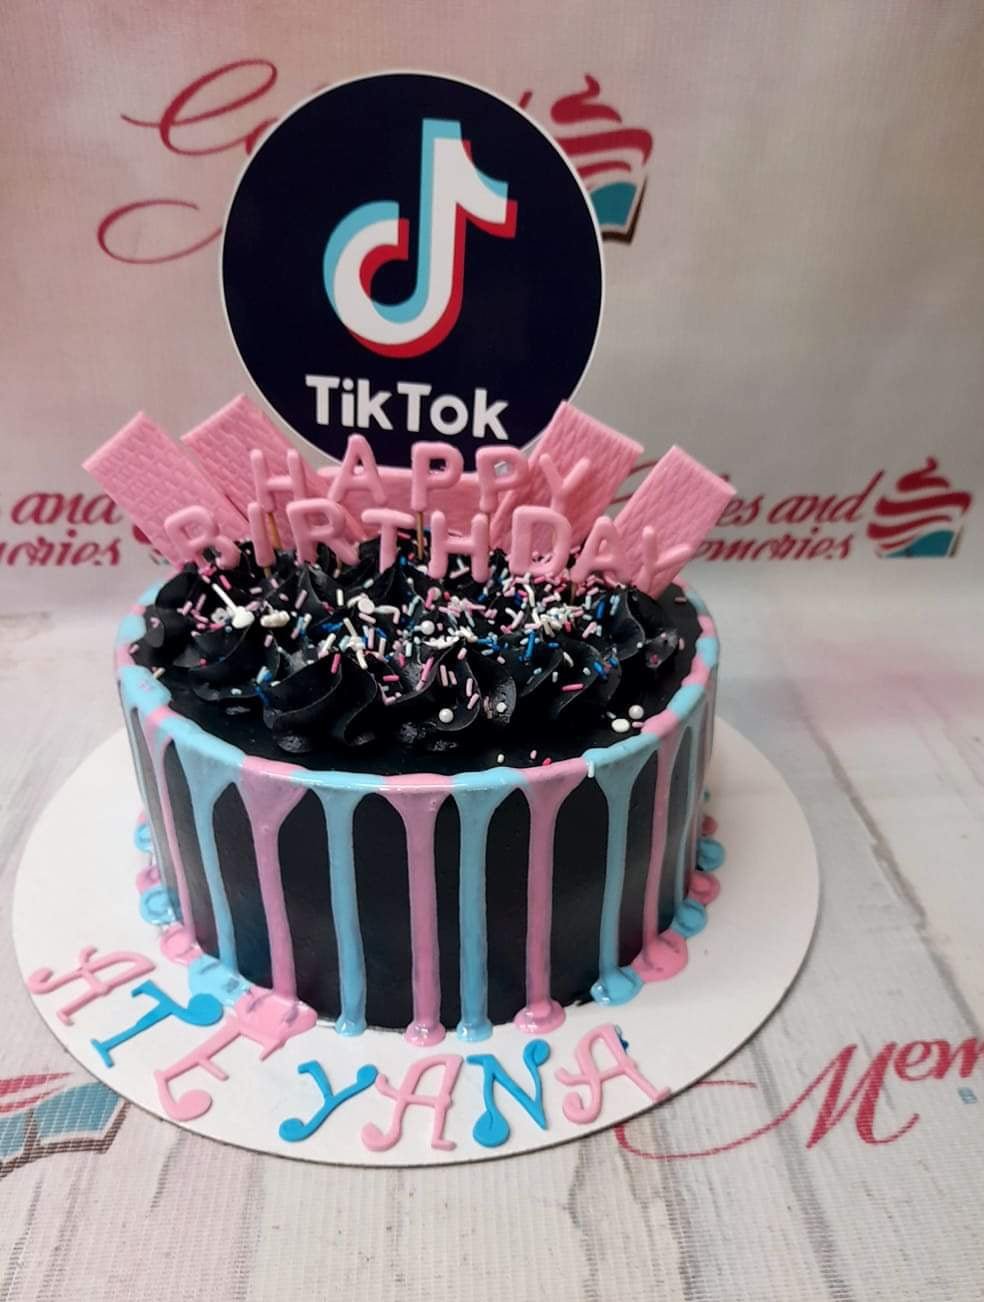 Tik Tok Cake - YouTube